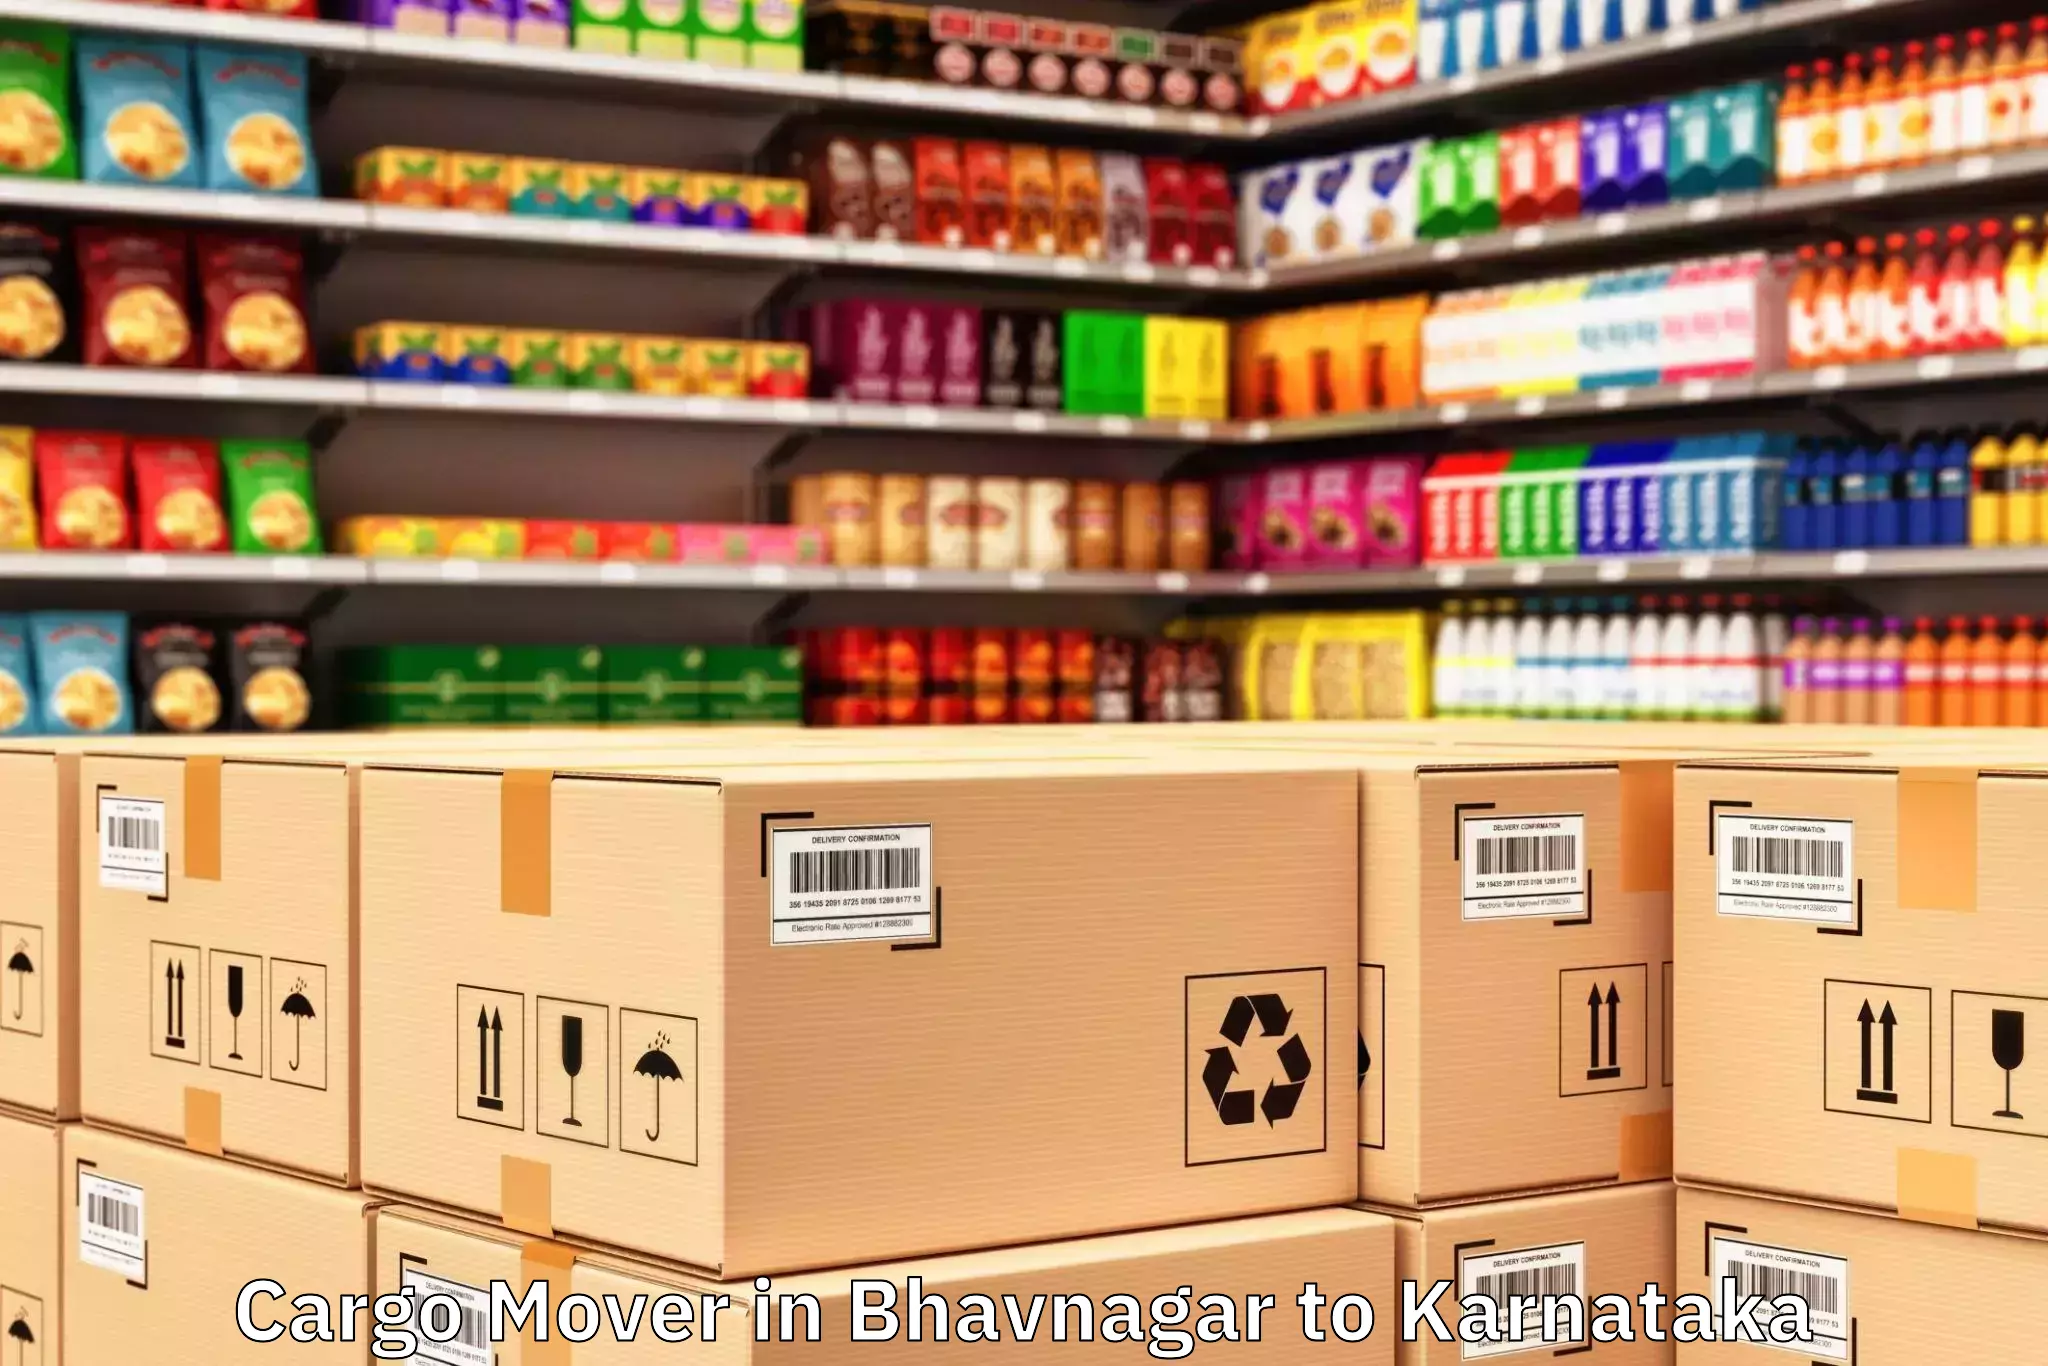 Efficient Bhavnagar to Gurmatkal Cargo Mover